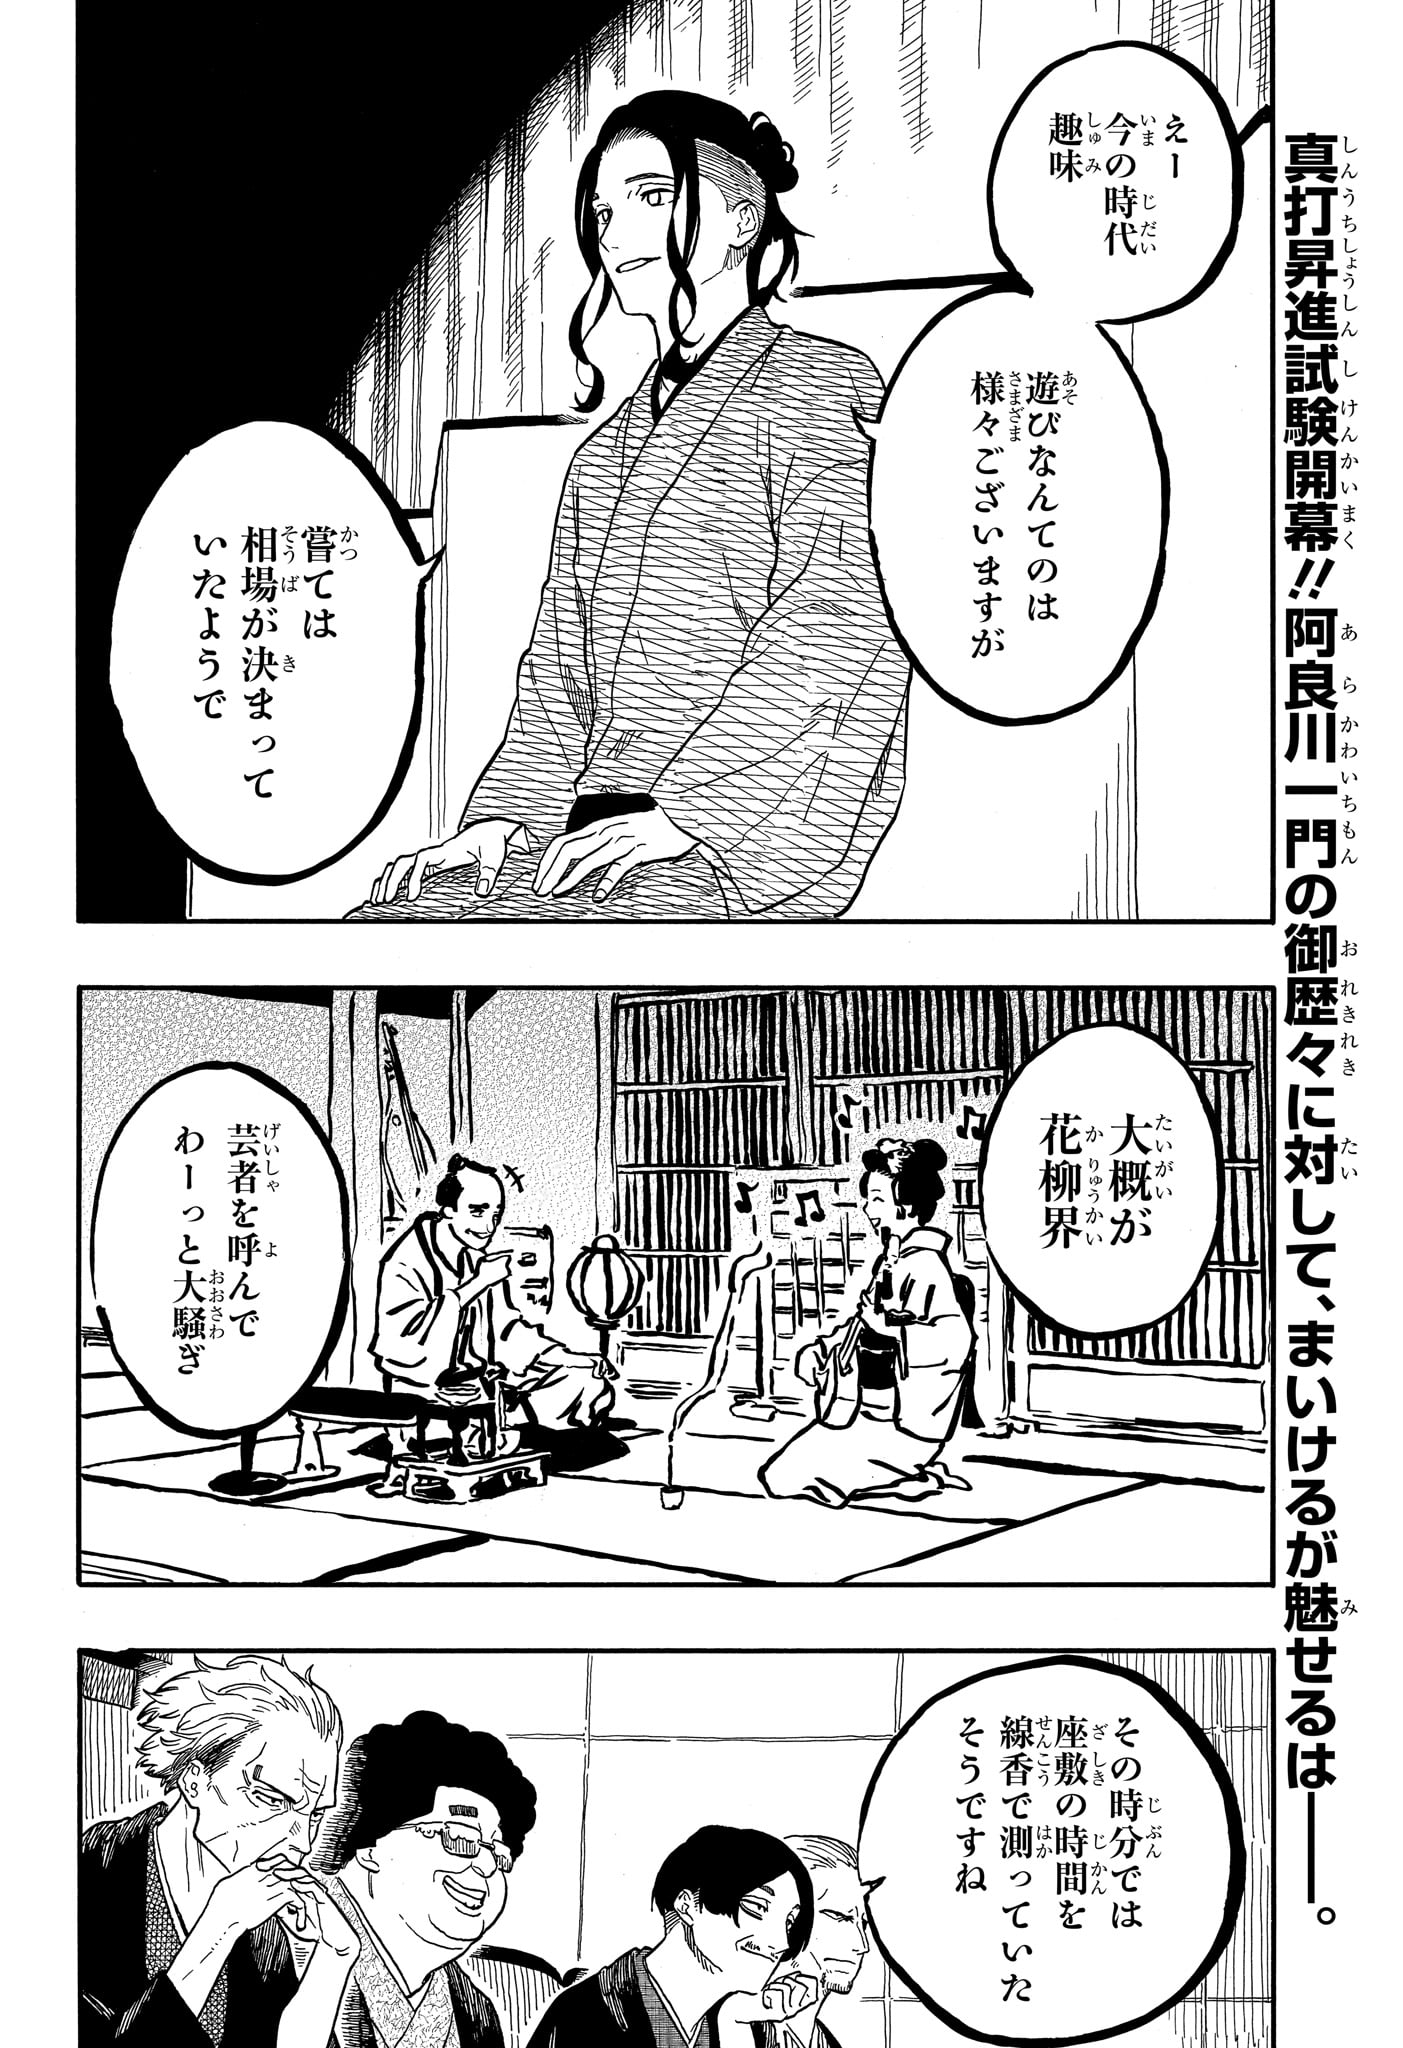 Akane-Banashi - Chapter 111 - Page 2